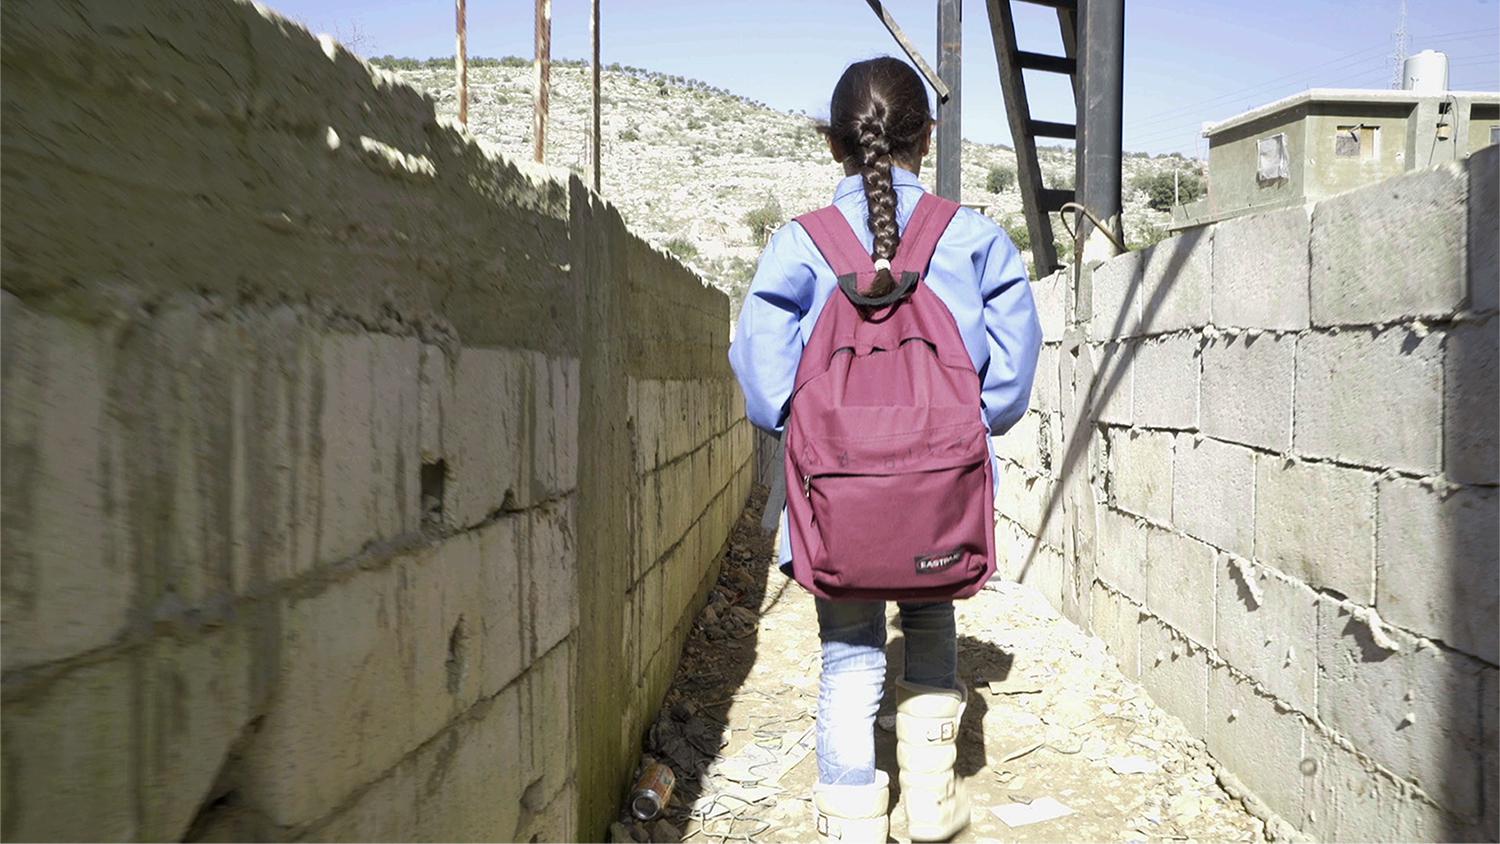 براء، ) 10 أعوام(، من الغوطة بسوريا، ذاهبة إلى المدرسة من مخيمها غير الرسمي في جبل لبنان.